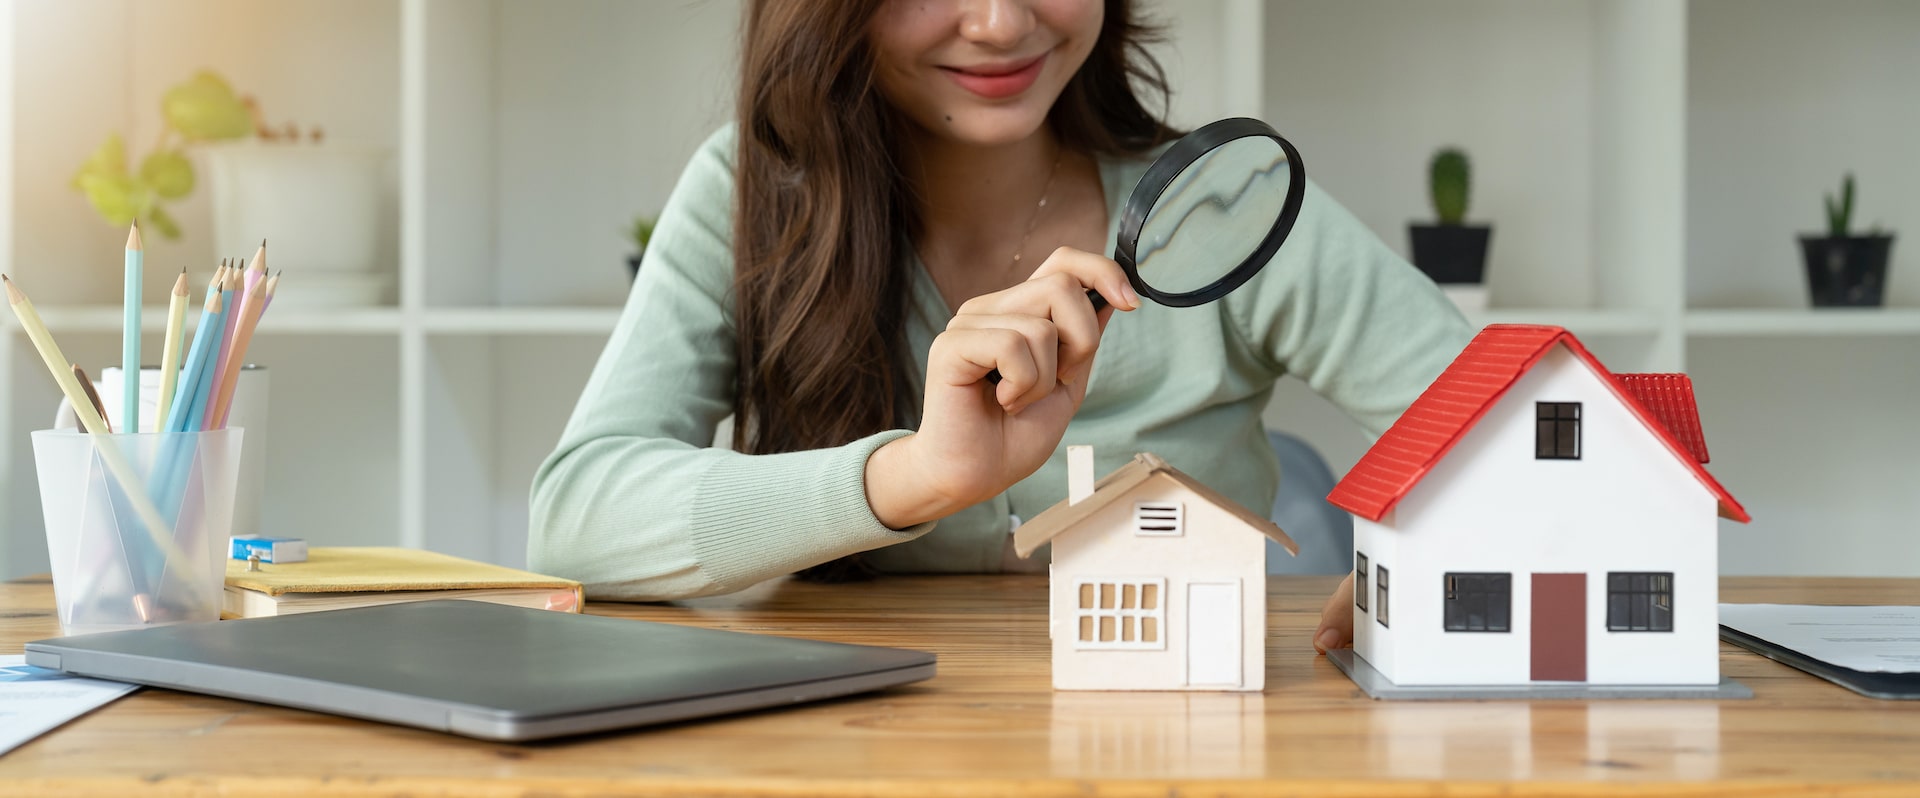 Kredyt hipoteczny przy ryczałcie – czy jest możliwy?